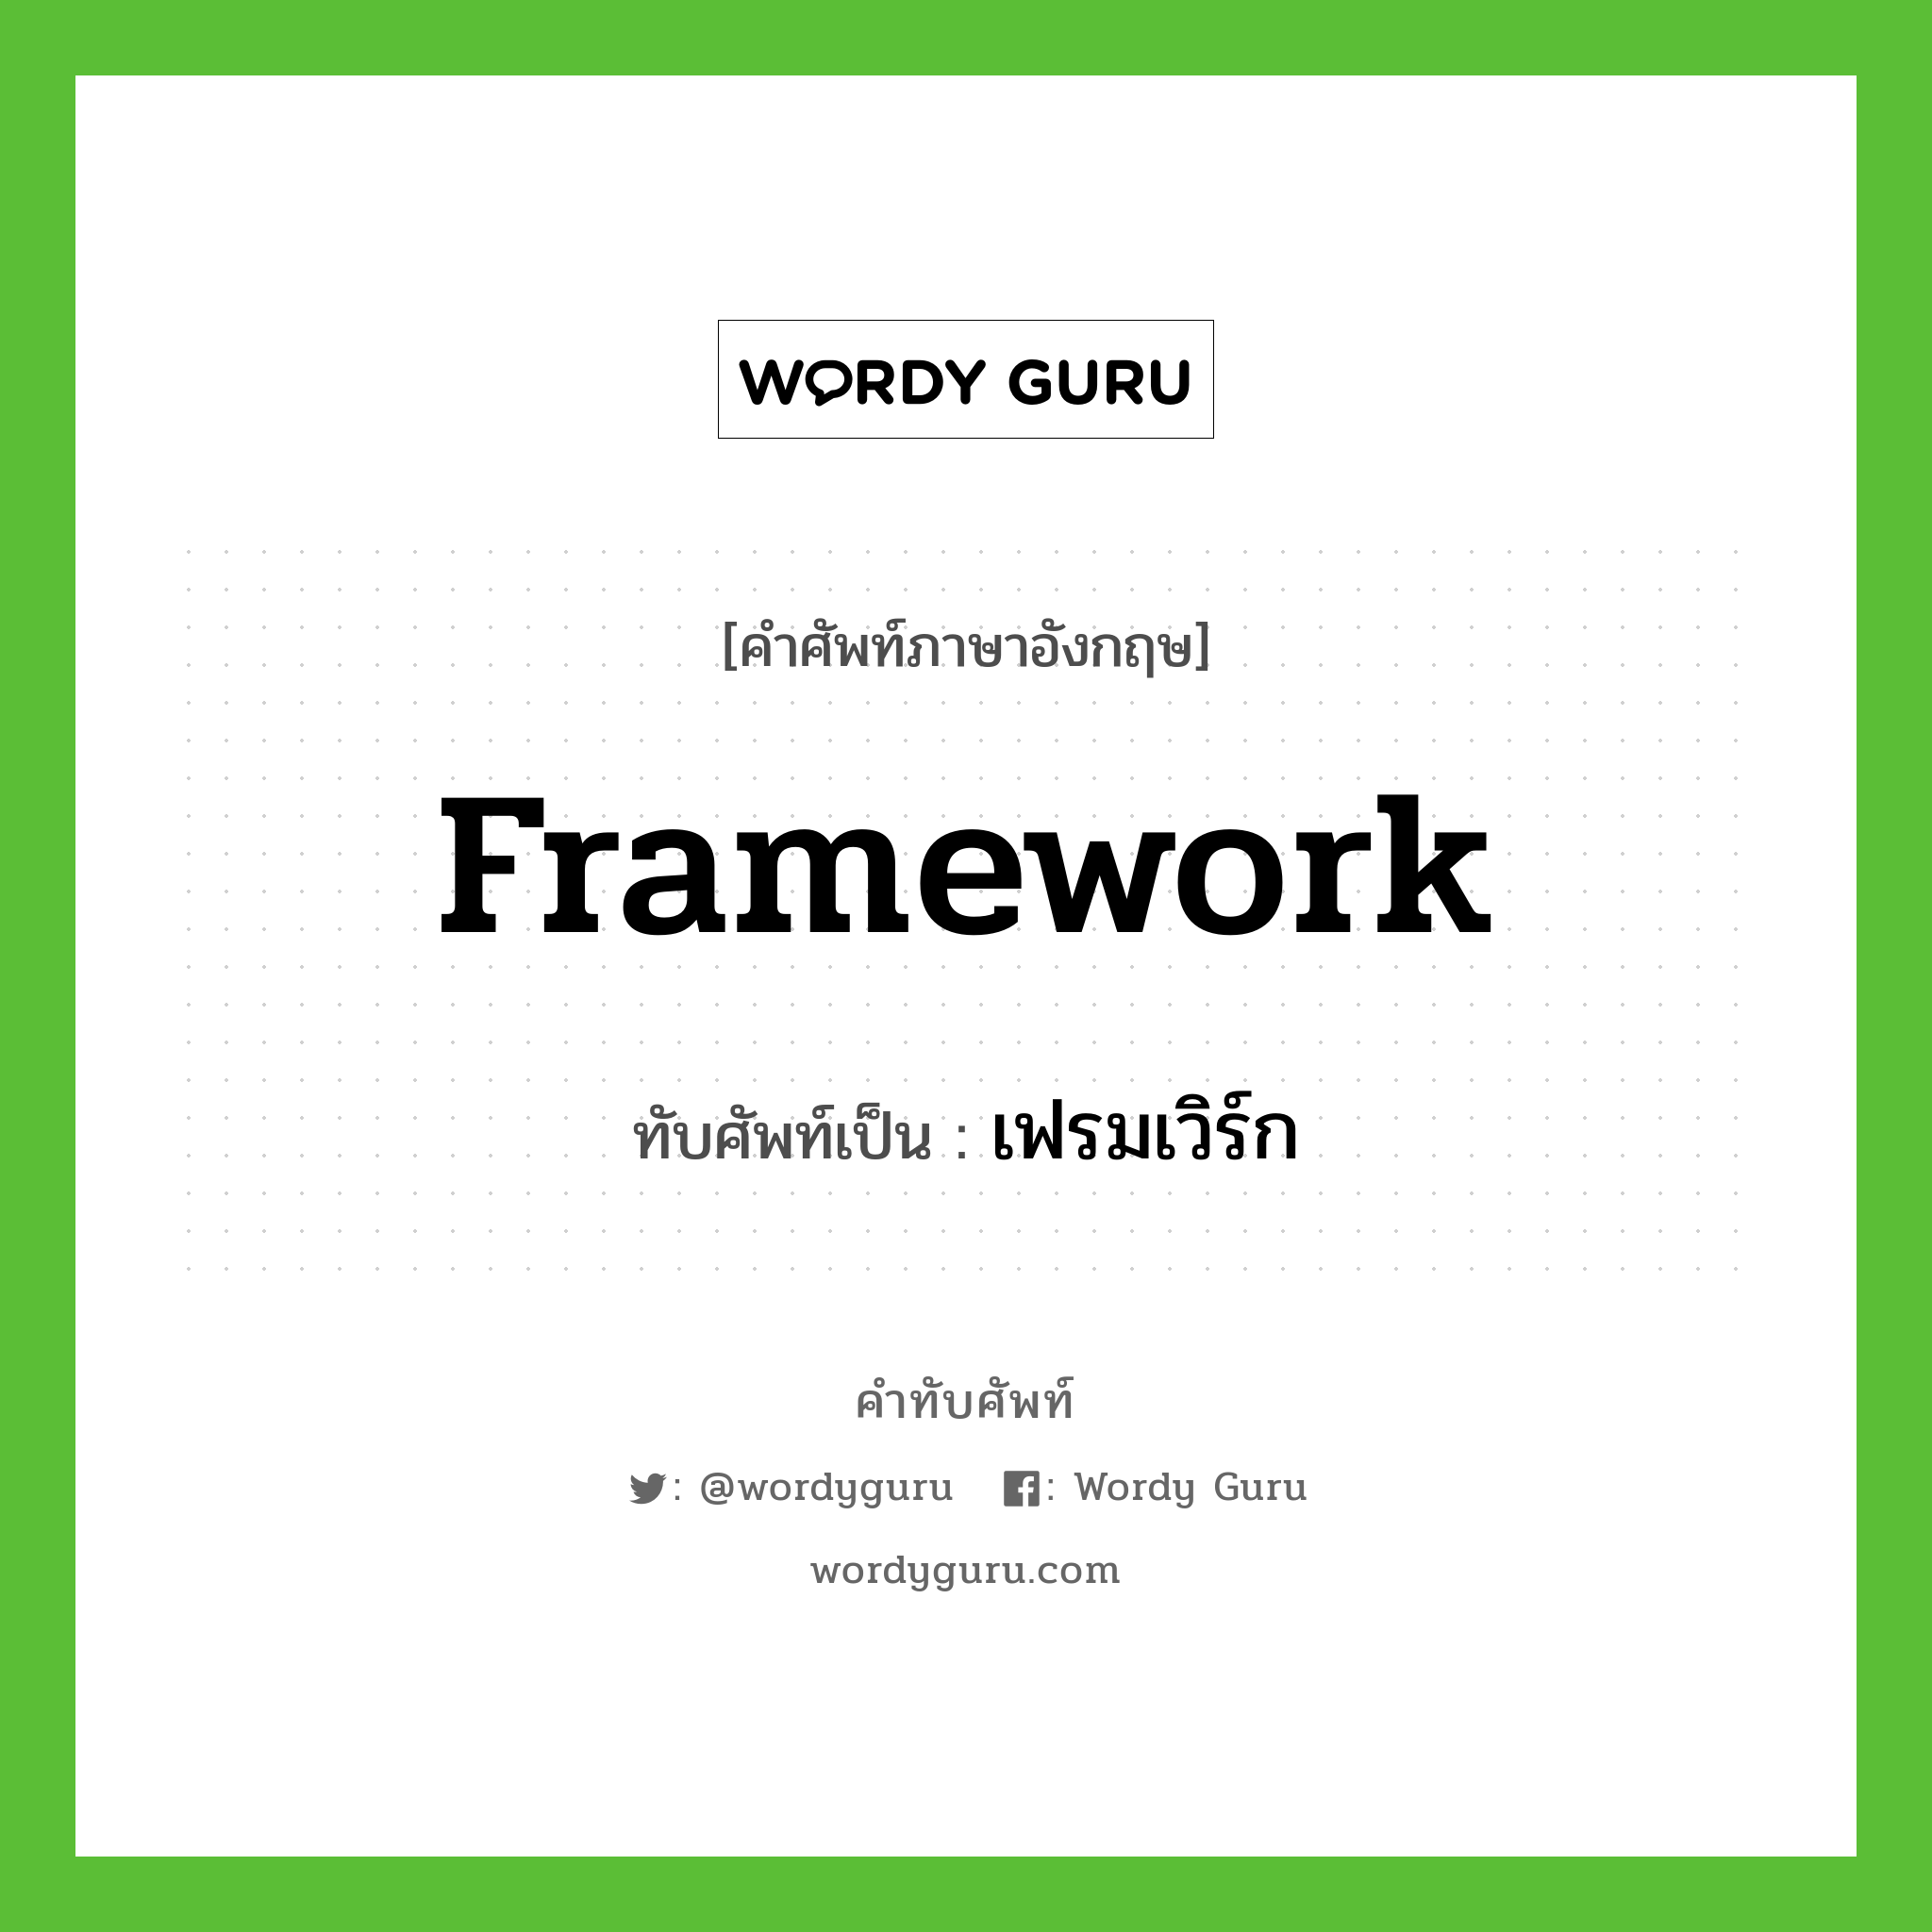 framework เขียนเป็นคำไทยว่าอะไร?, คำศัพท์ภาษาอังกฤษ framework ทับศัพท์เป็น เฟรมเวิร์ก